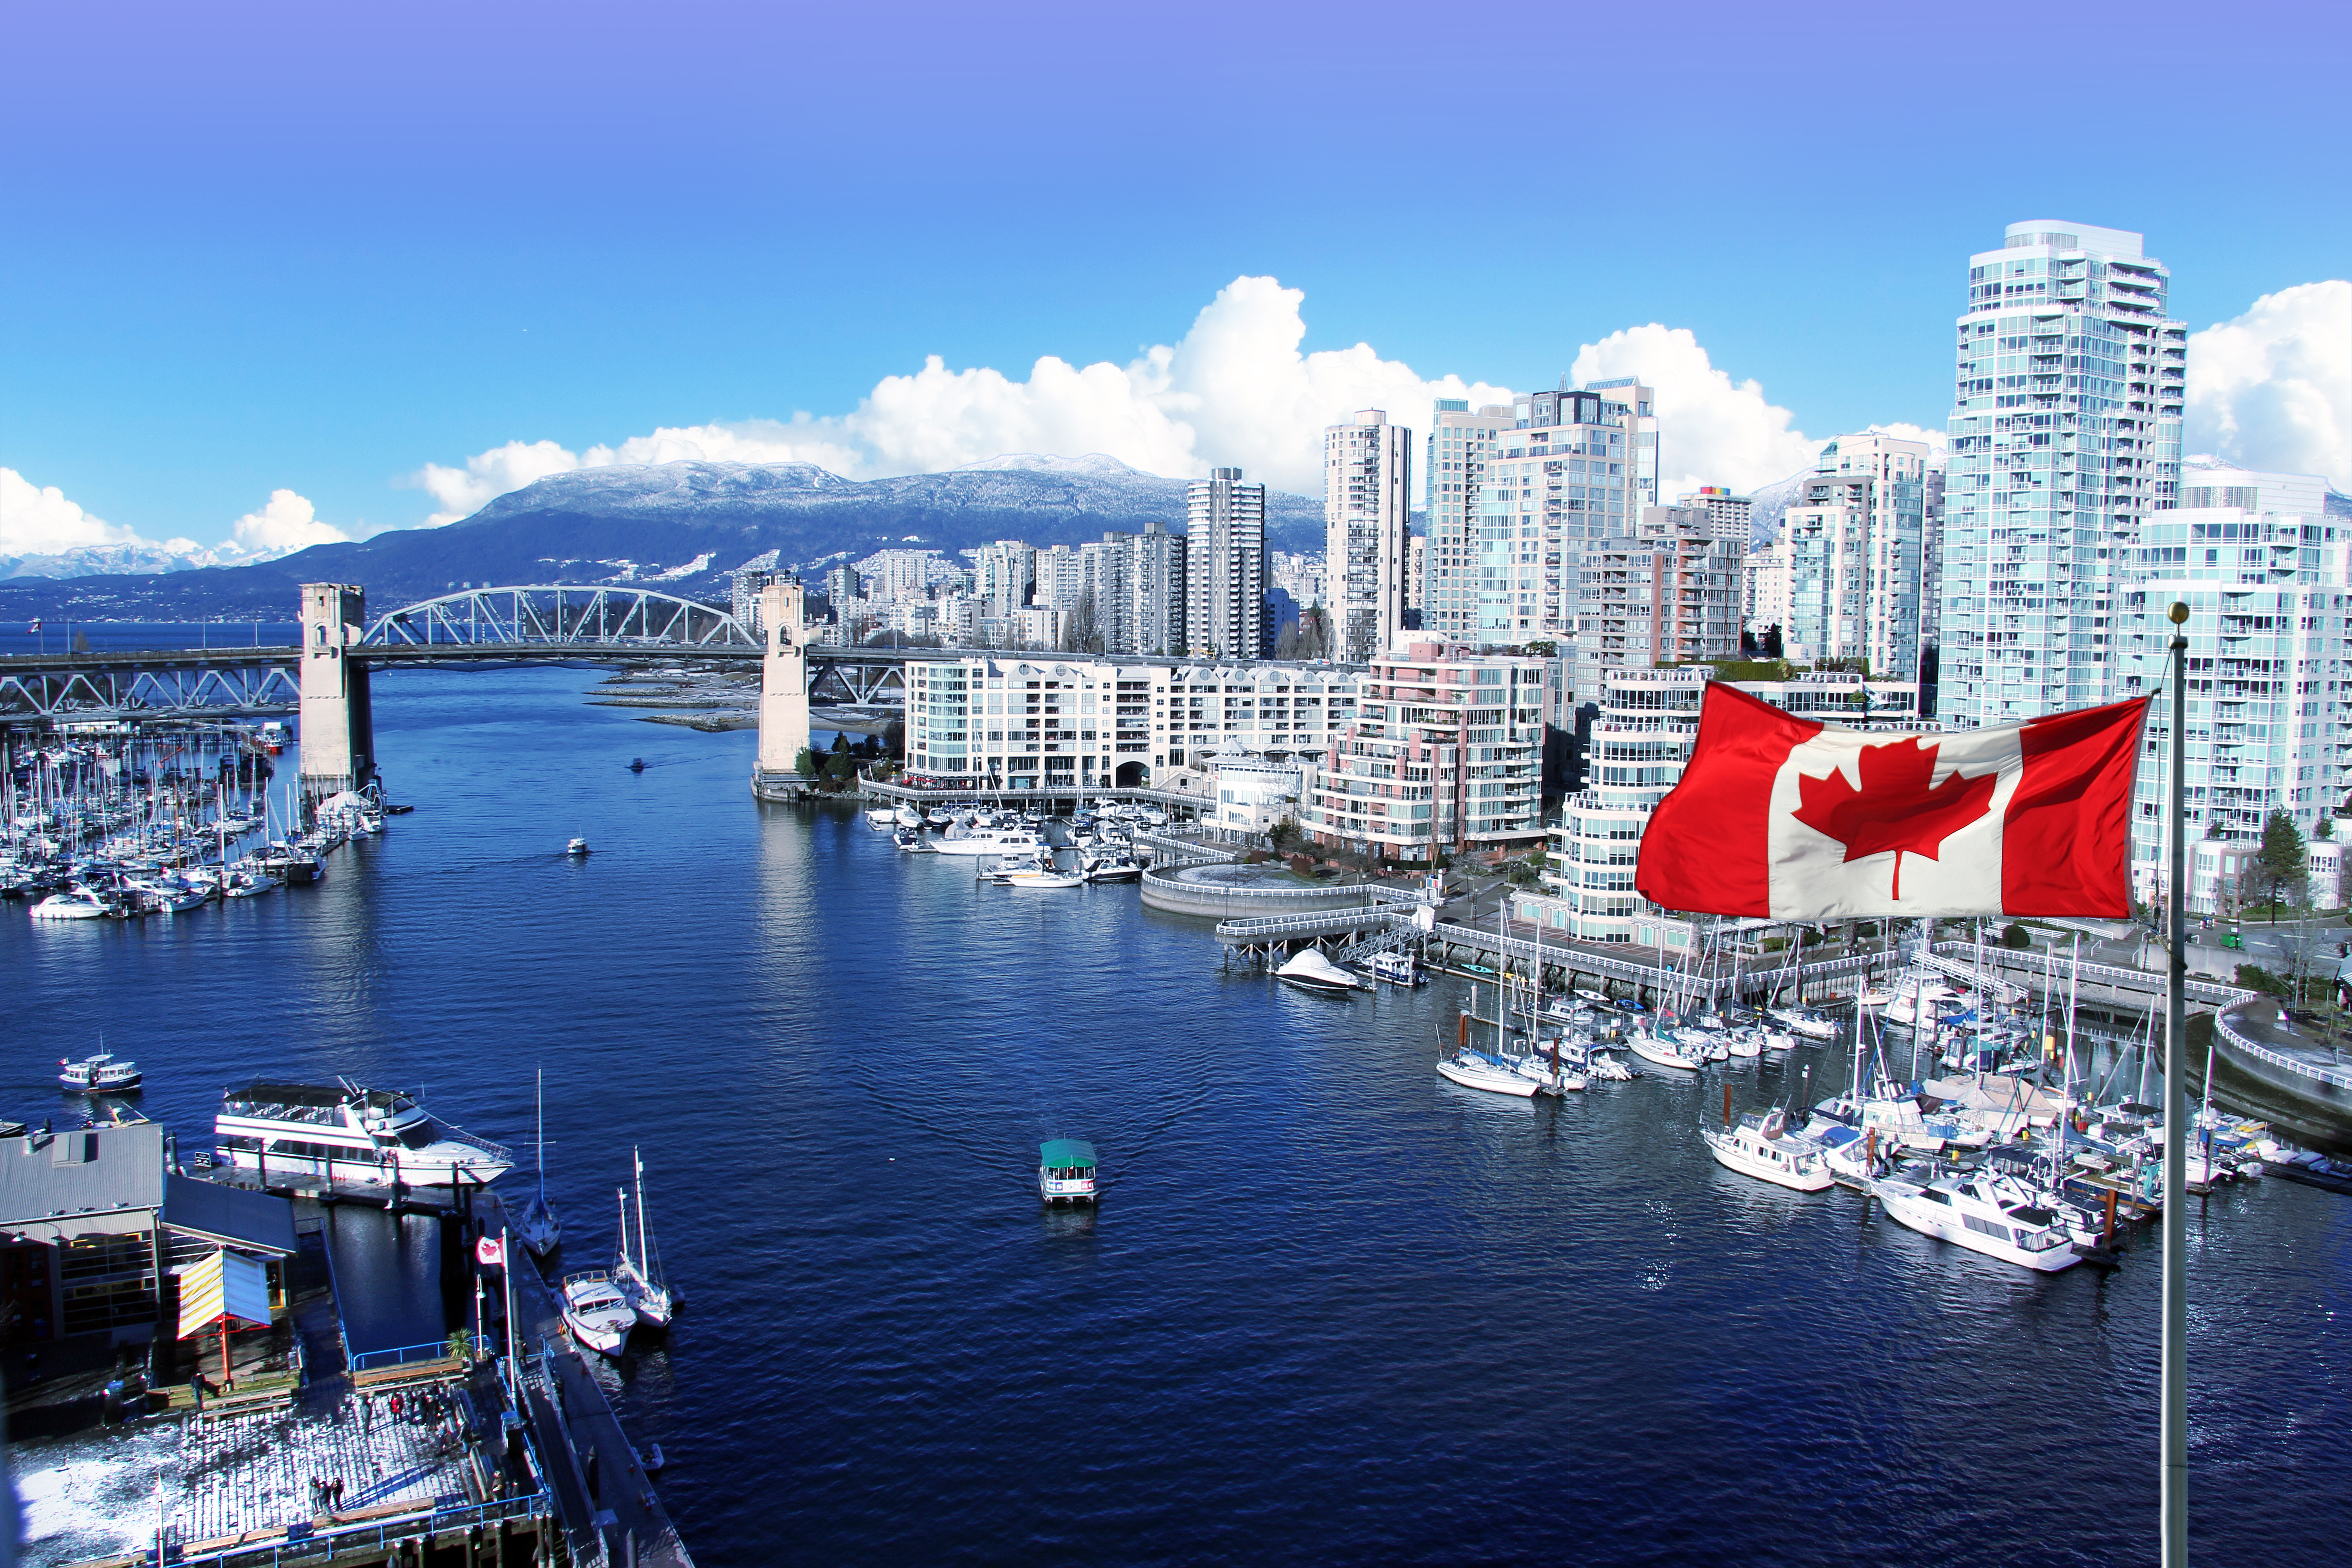 Además de la convocatoria para estudiar y trabajar, Canadá ofrece un programa llamado Express Entry para que personas de distintas partes del mundo puedan obtener la residencia.